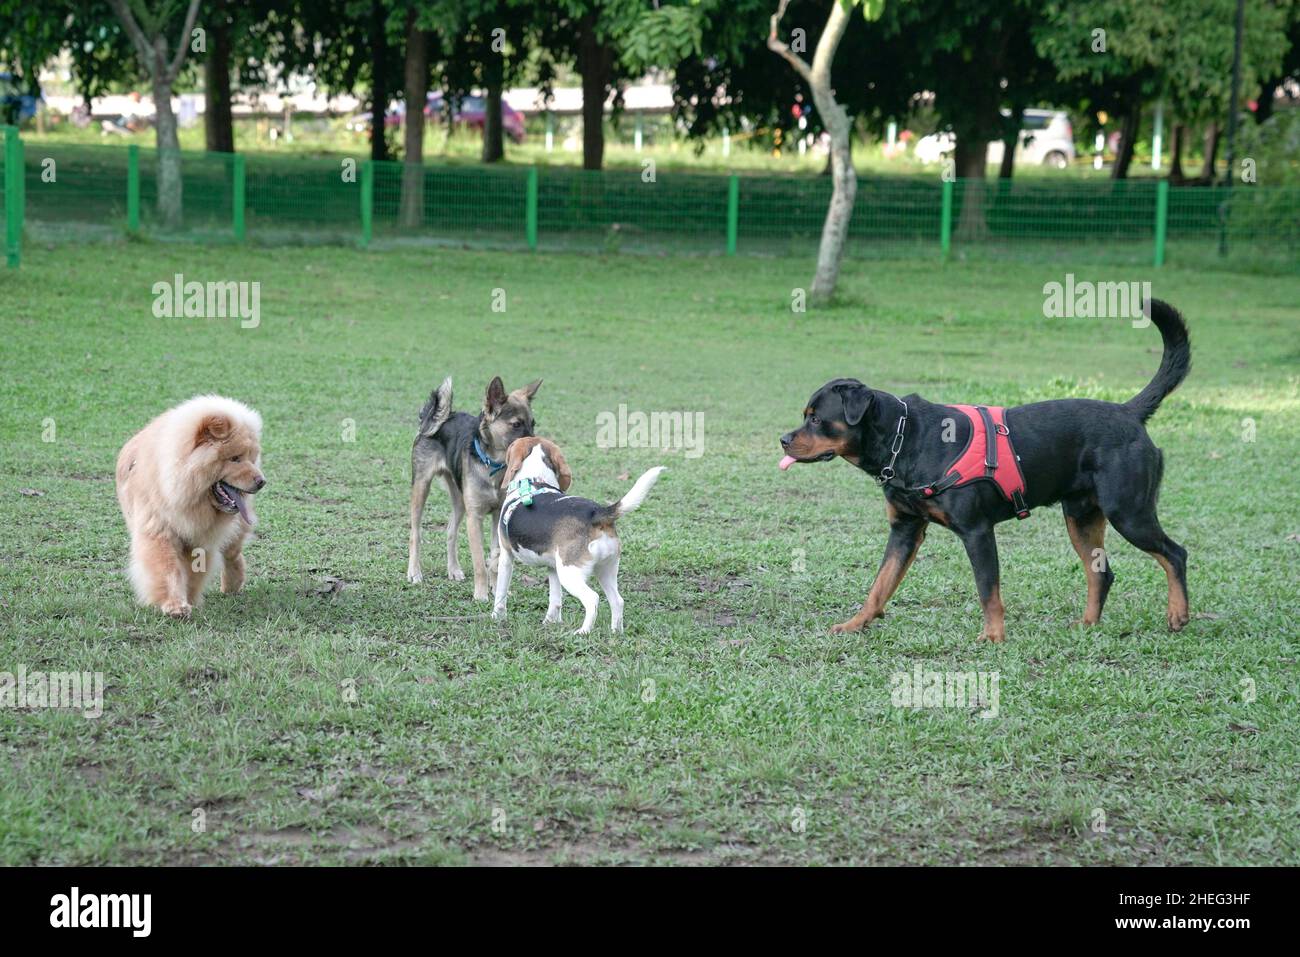 Hundepark, eine Gruppe von Hunden verschiedener Rassen, die zusammen spielen. Konzept der Hundesozialisierung. Stockfoto